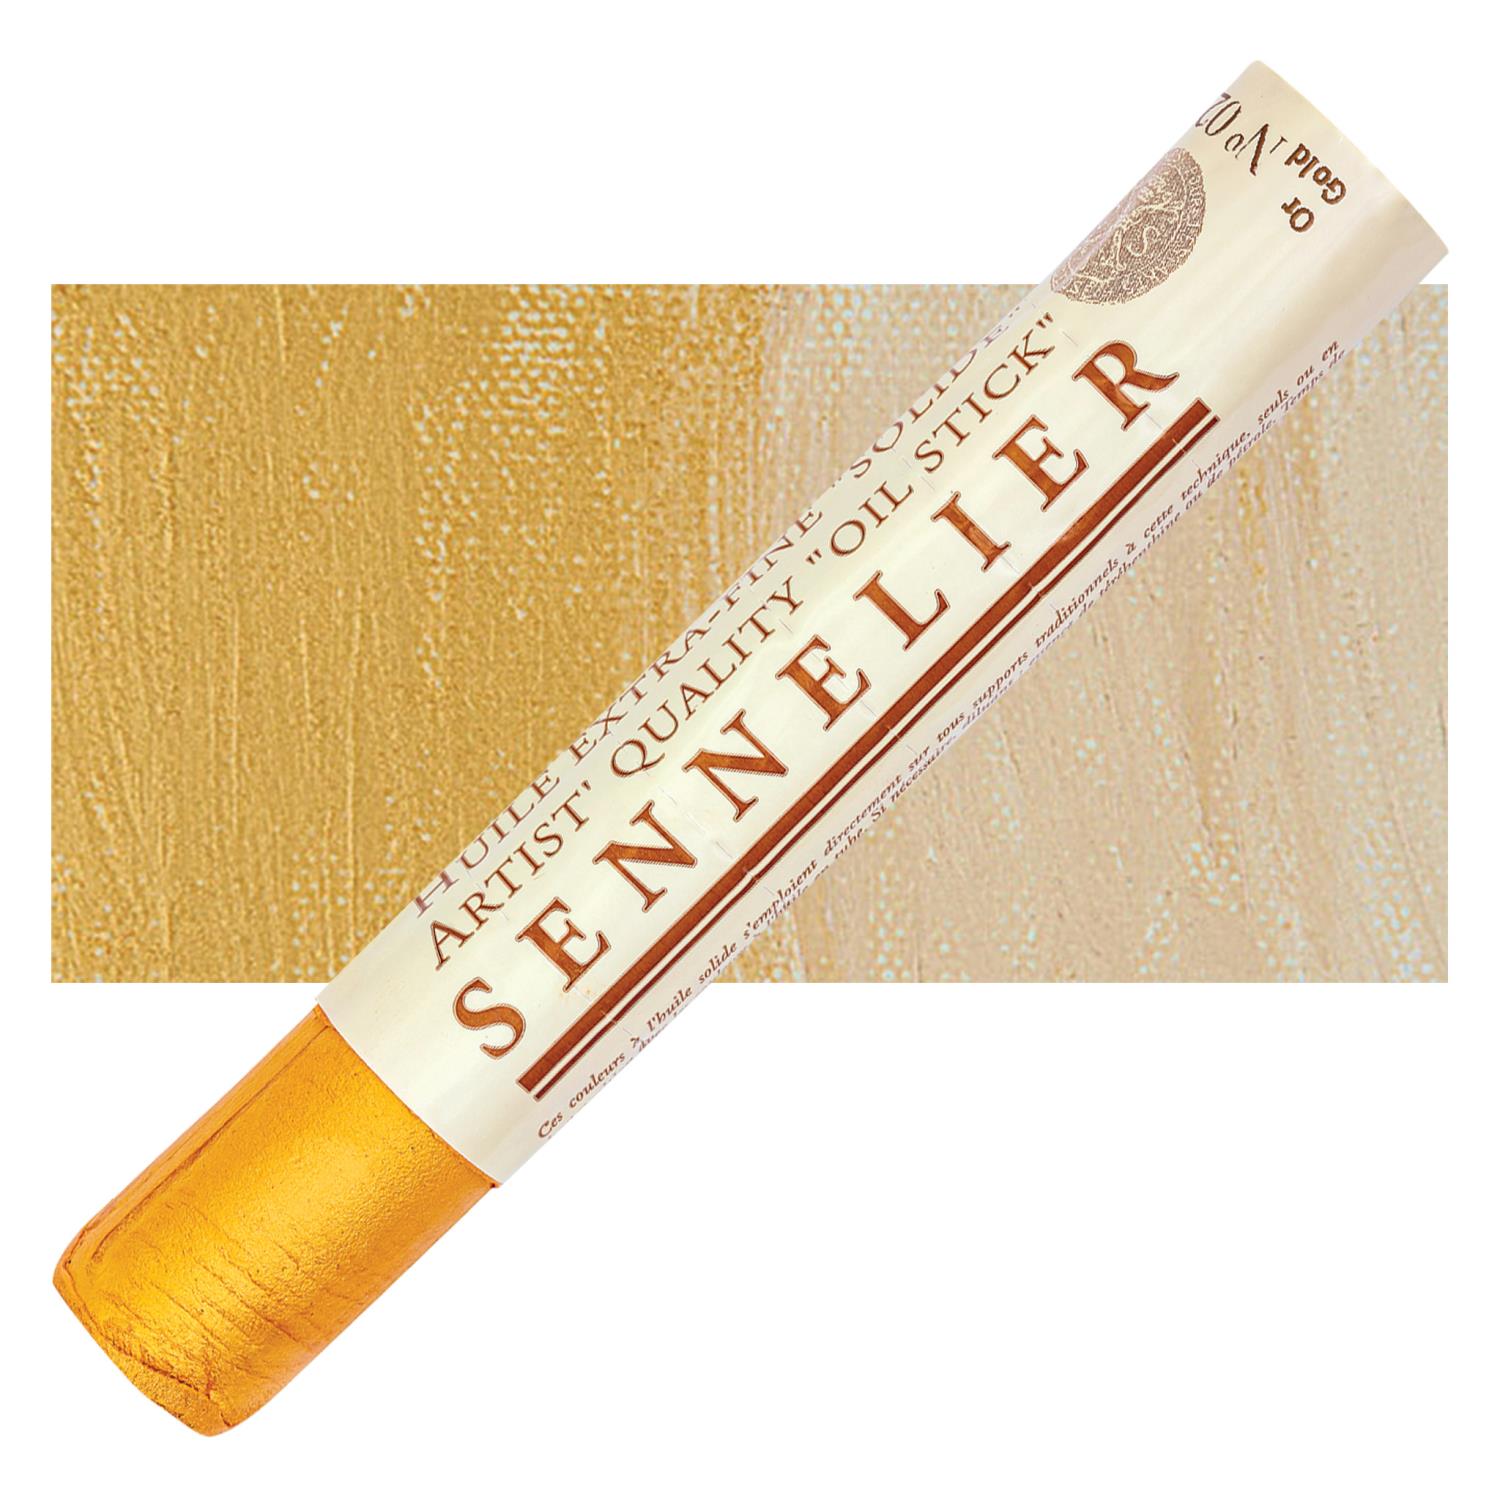 Sennelier Artist Oil Stick 38ml - 028 Gold S3 utgår